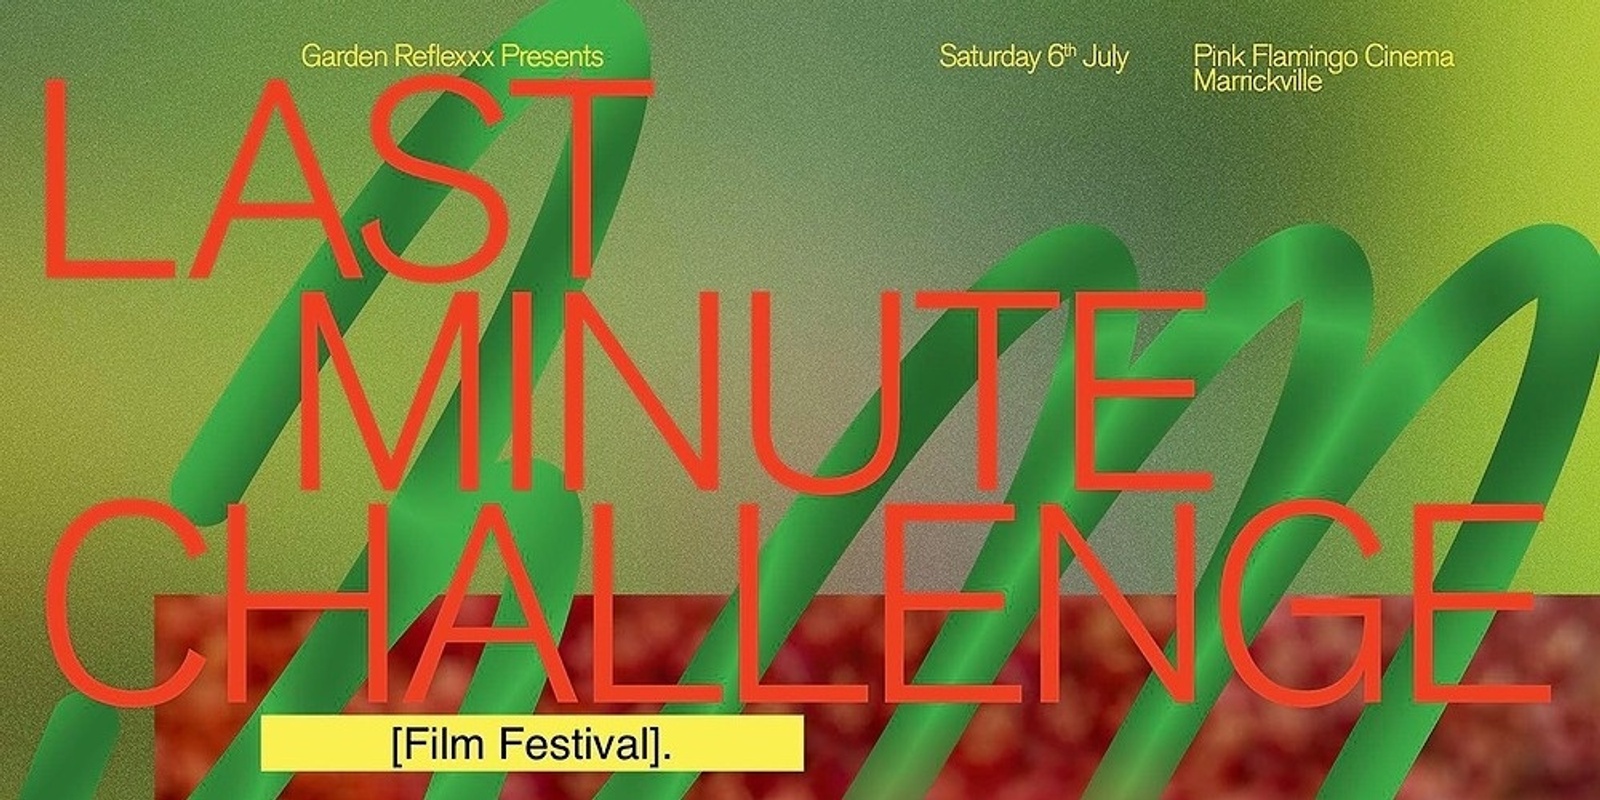 Banner image for Garden Reflexxx Presents Last Minute Challenge